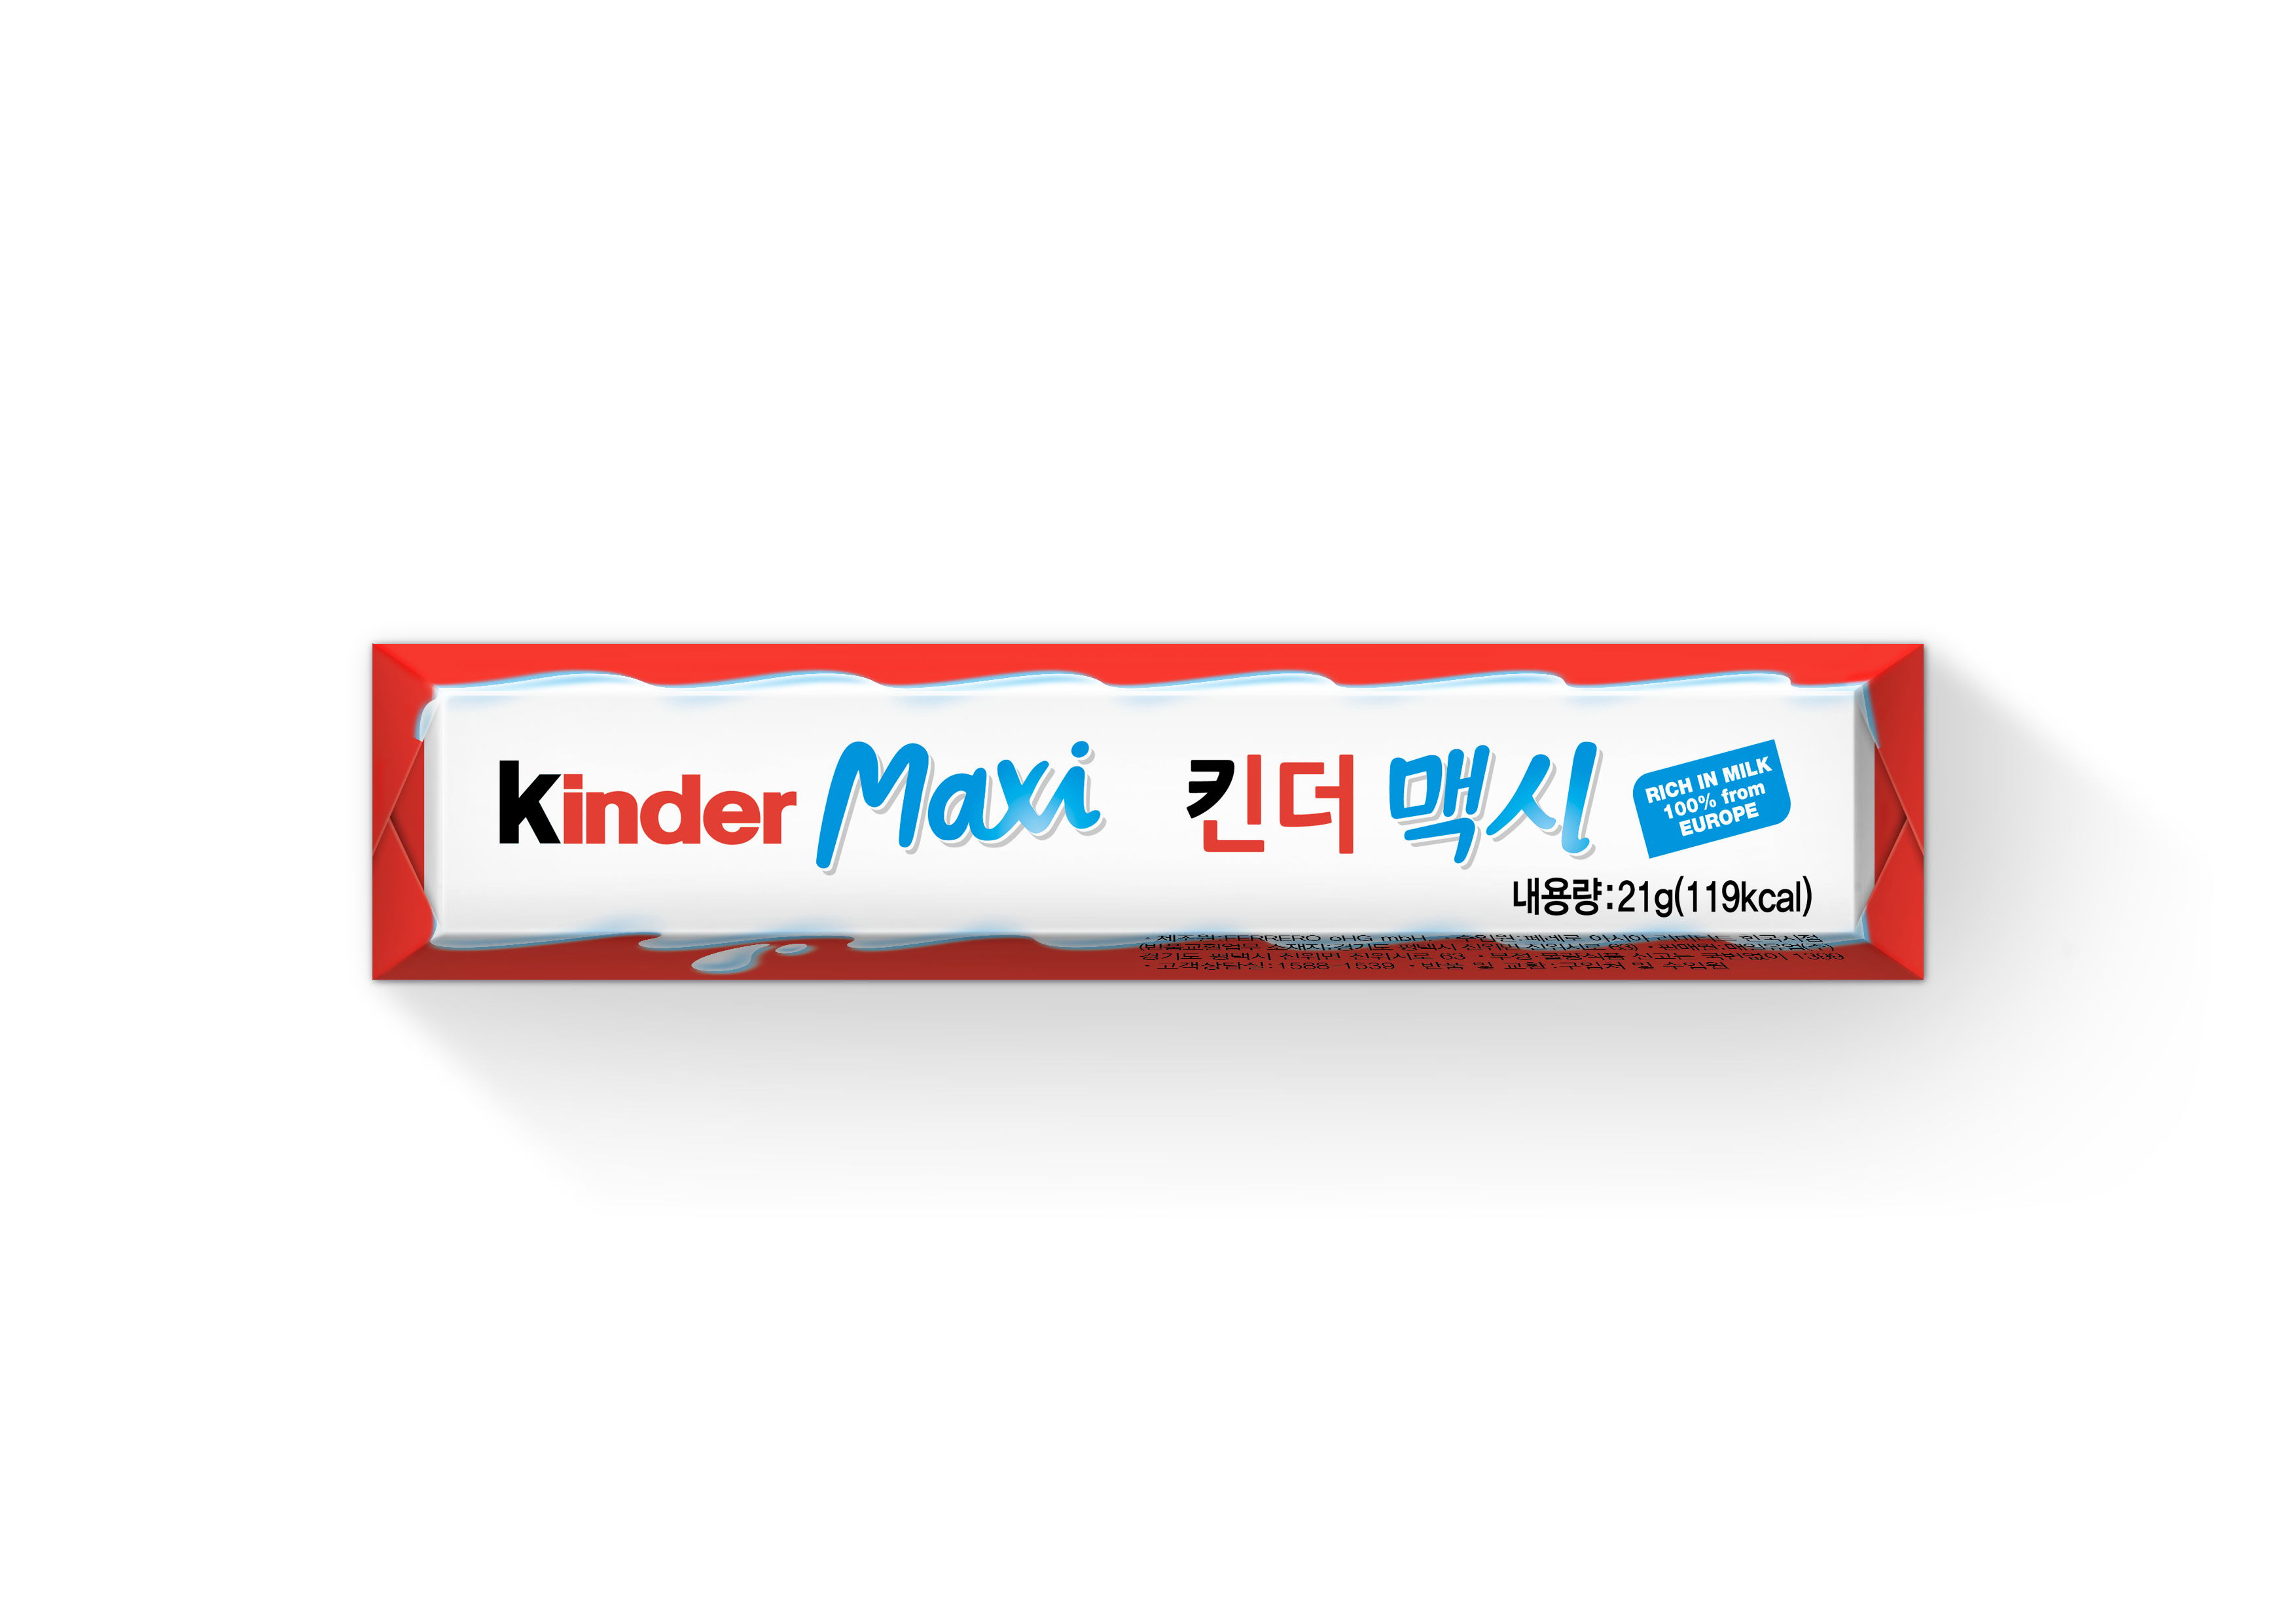 200730 Kinder Maxi T1 up_AW146741